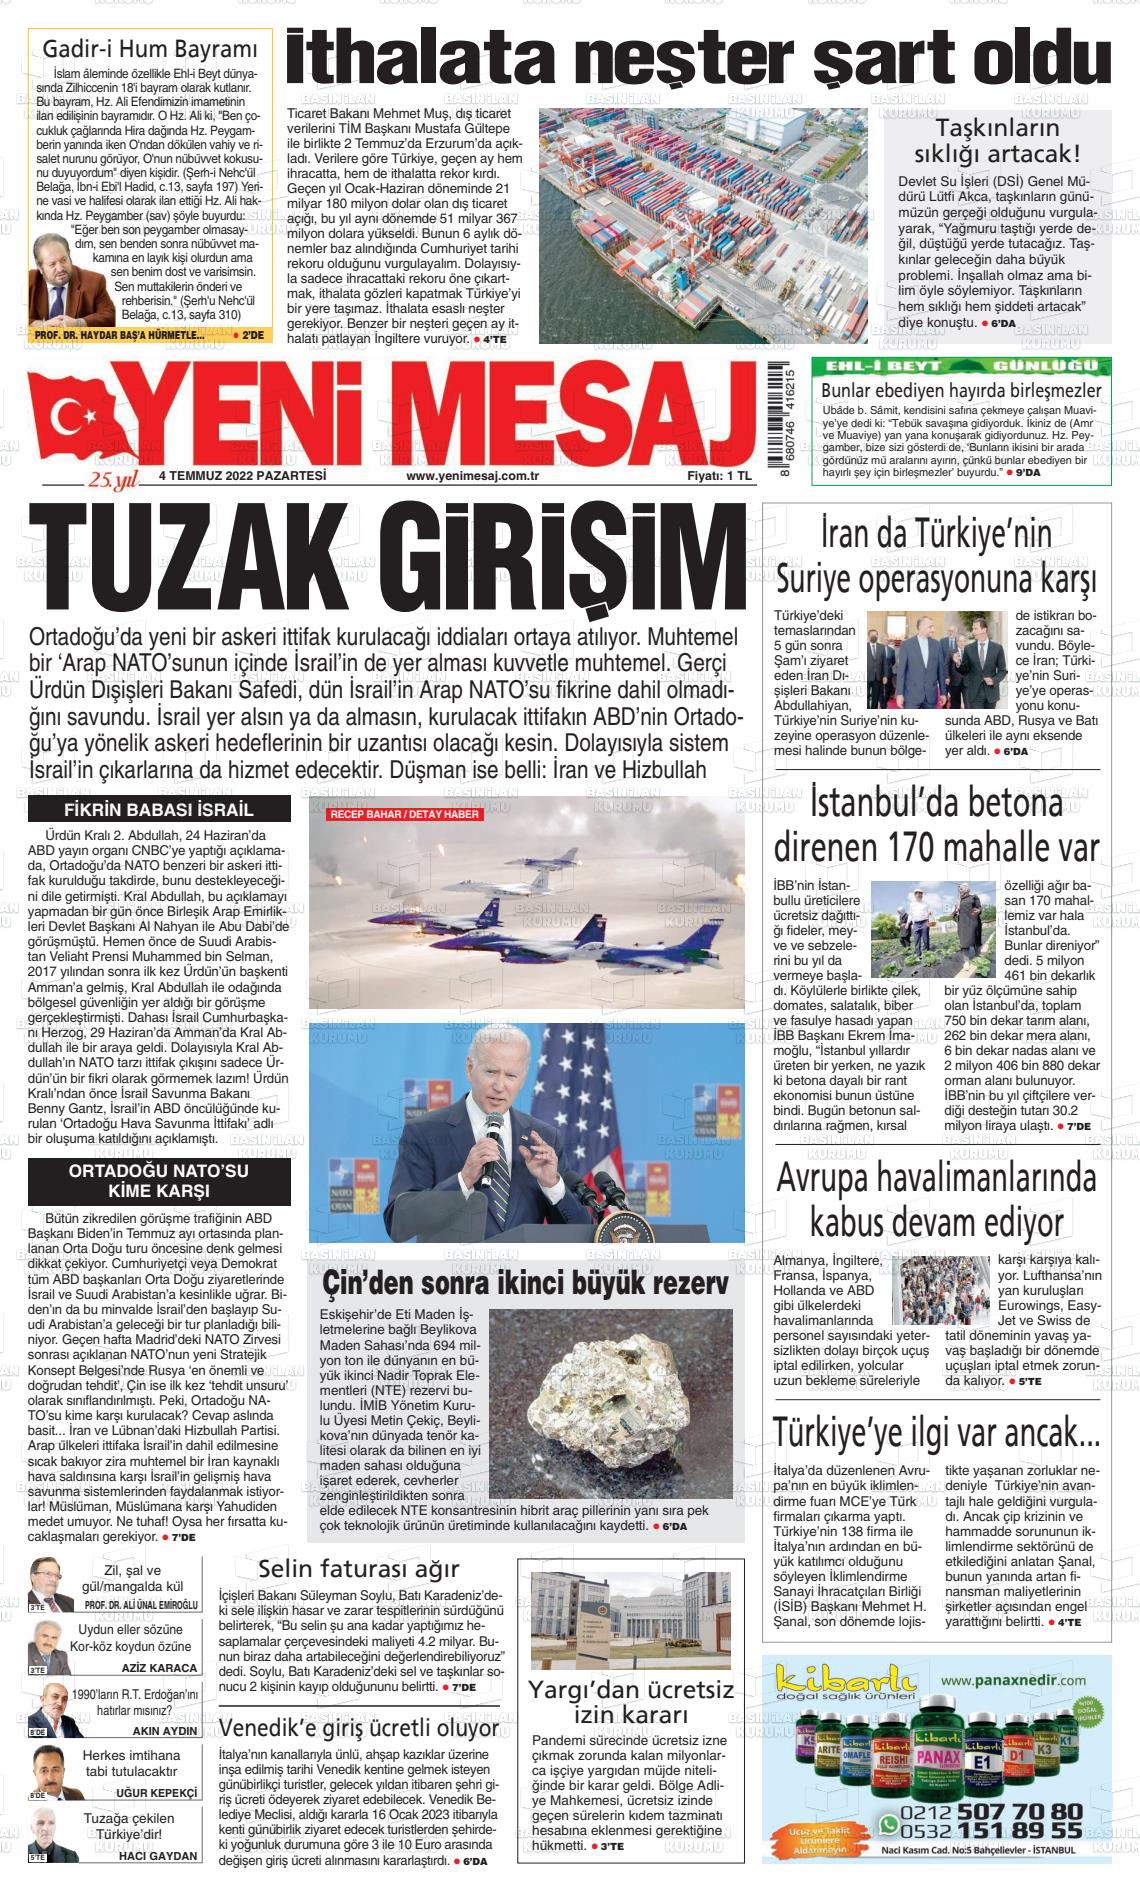 04 Temmuz 2022 Yeni Mesaj Gazete Manşeti